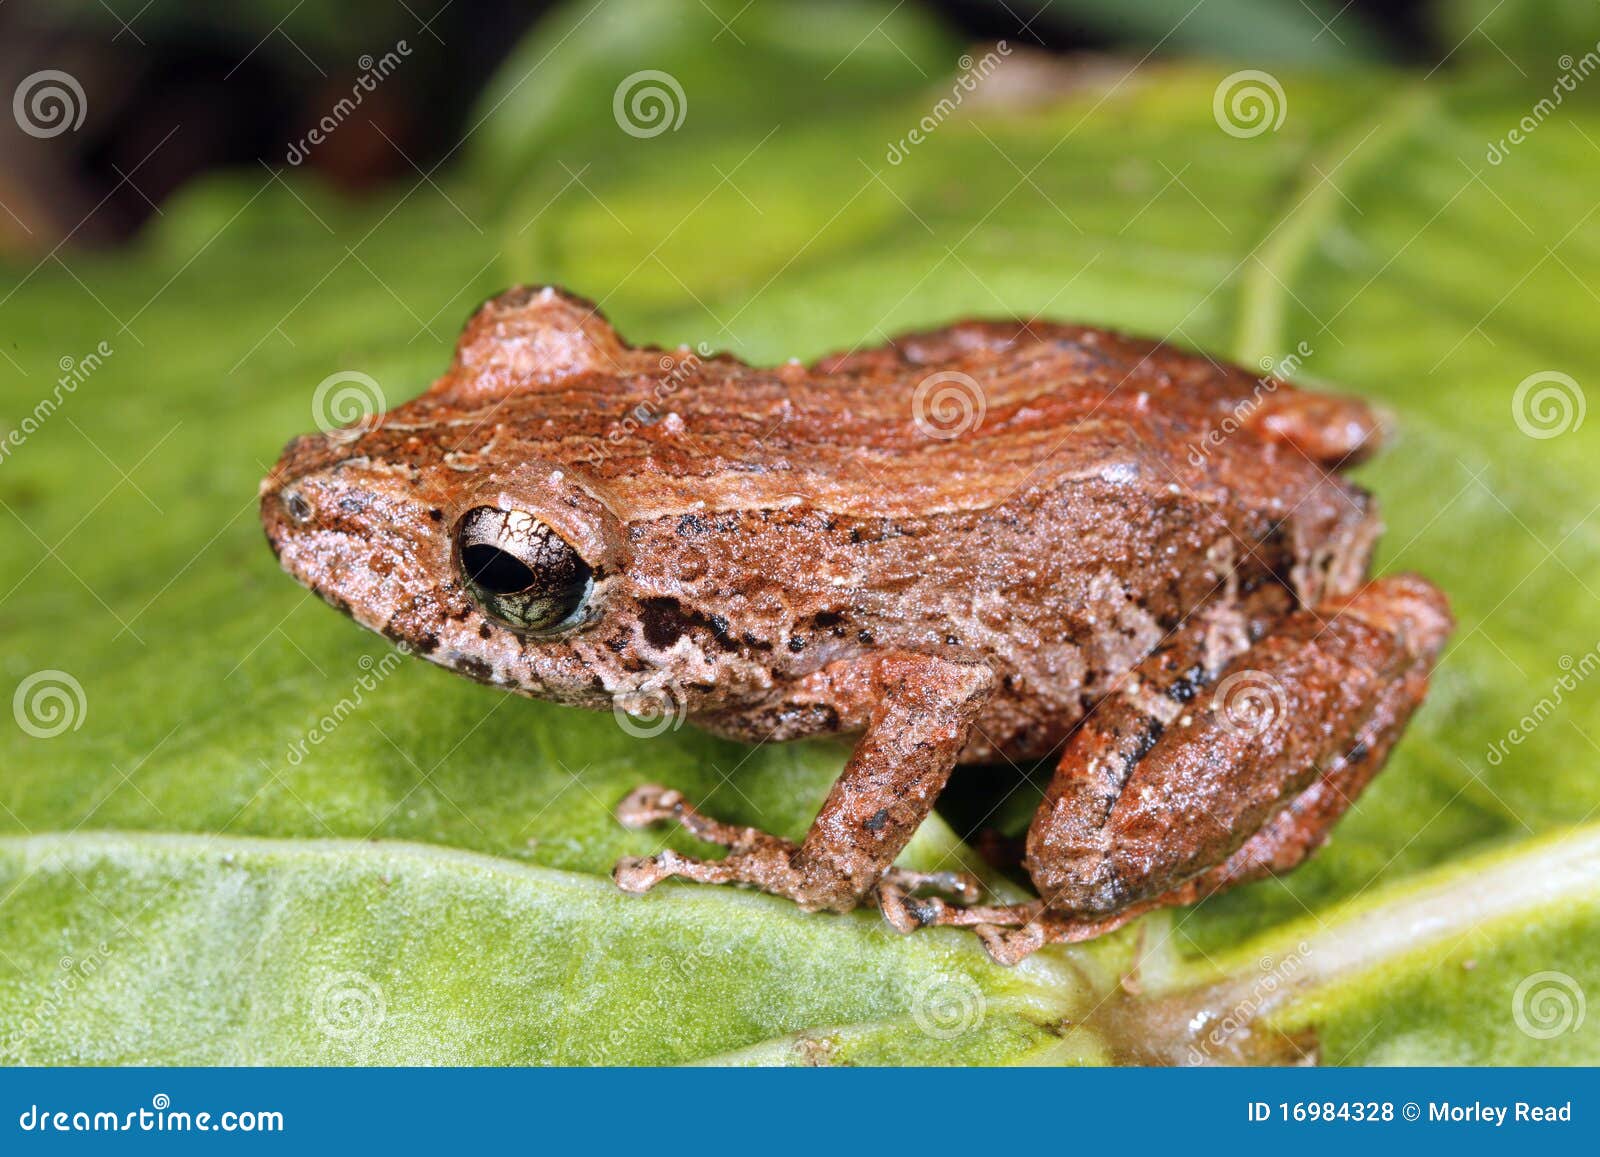 amazonian rain frog